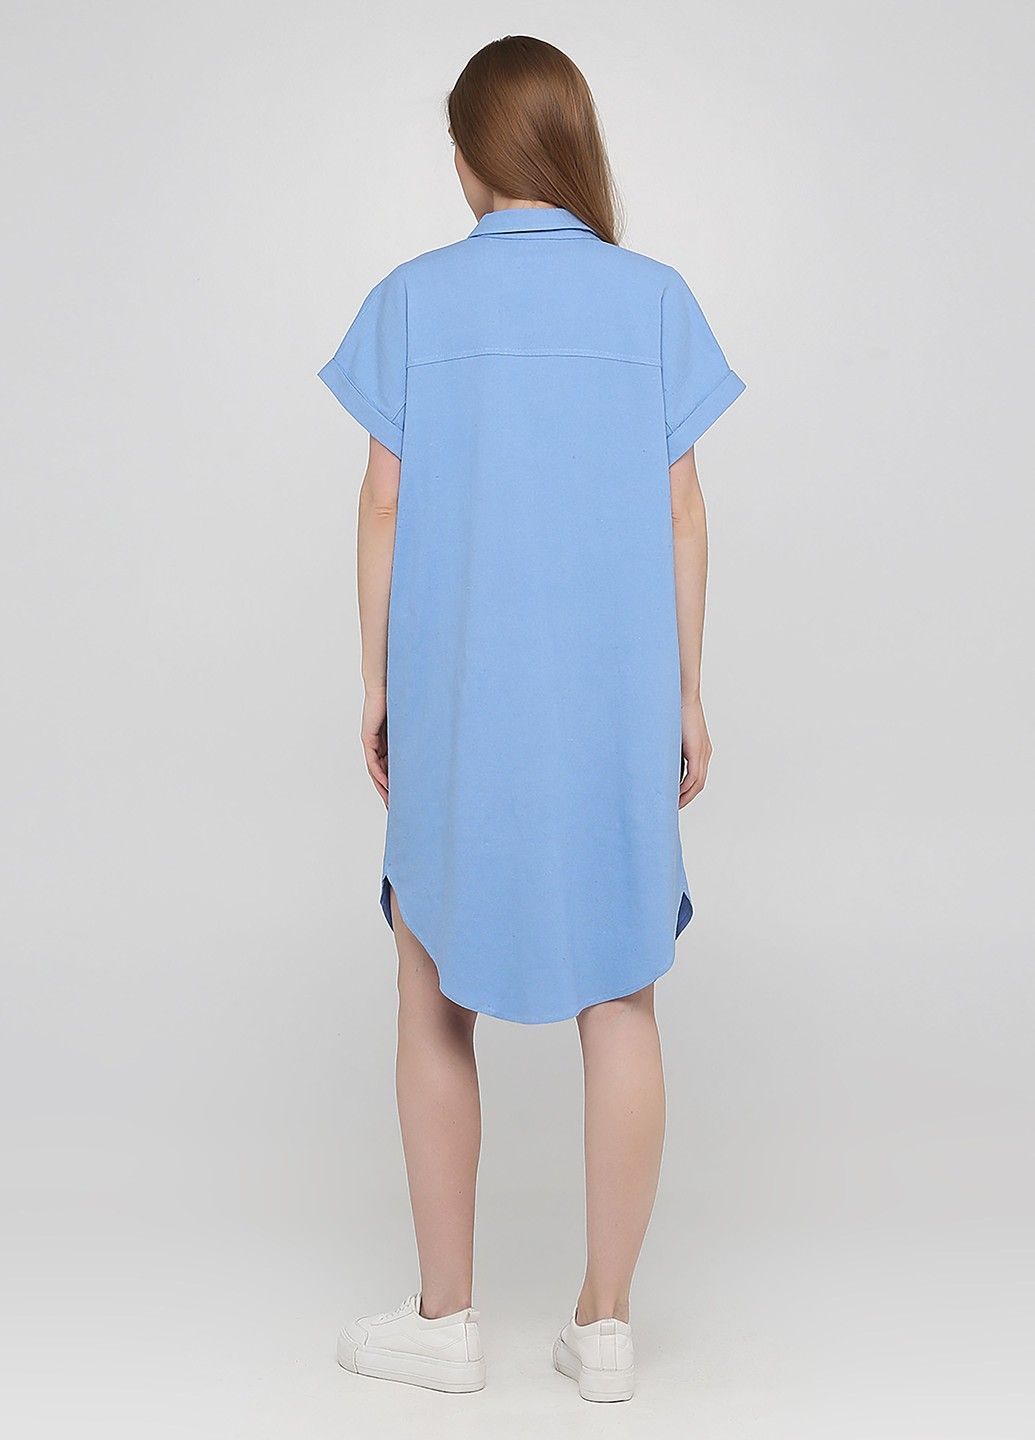 Купить Льняное платье-рубашка Merlini Орлеан 700000003 - Голубой, 42-44 в интернет-магазине